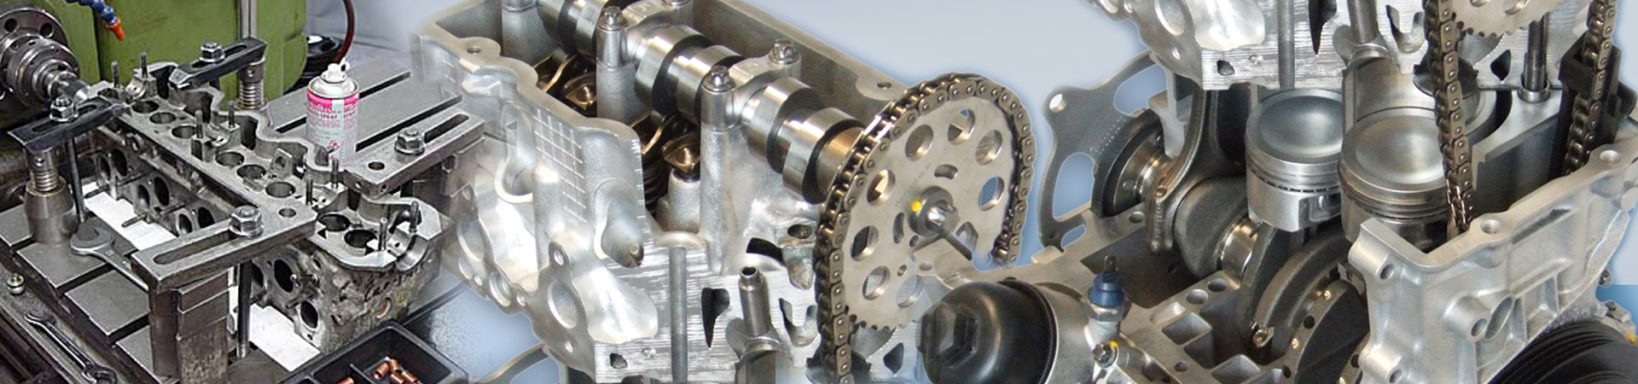 Mechanische Bearbeitung von Motoren und Motoren-Instandsetzung